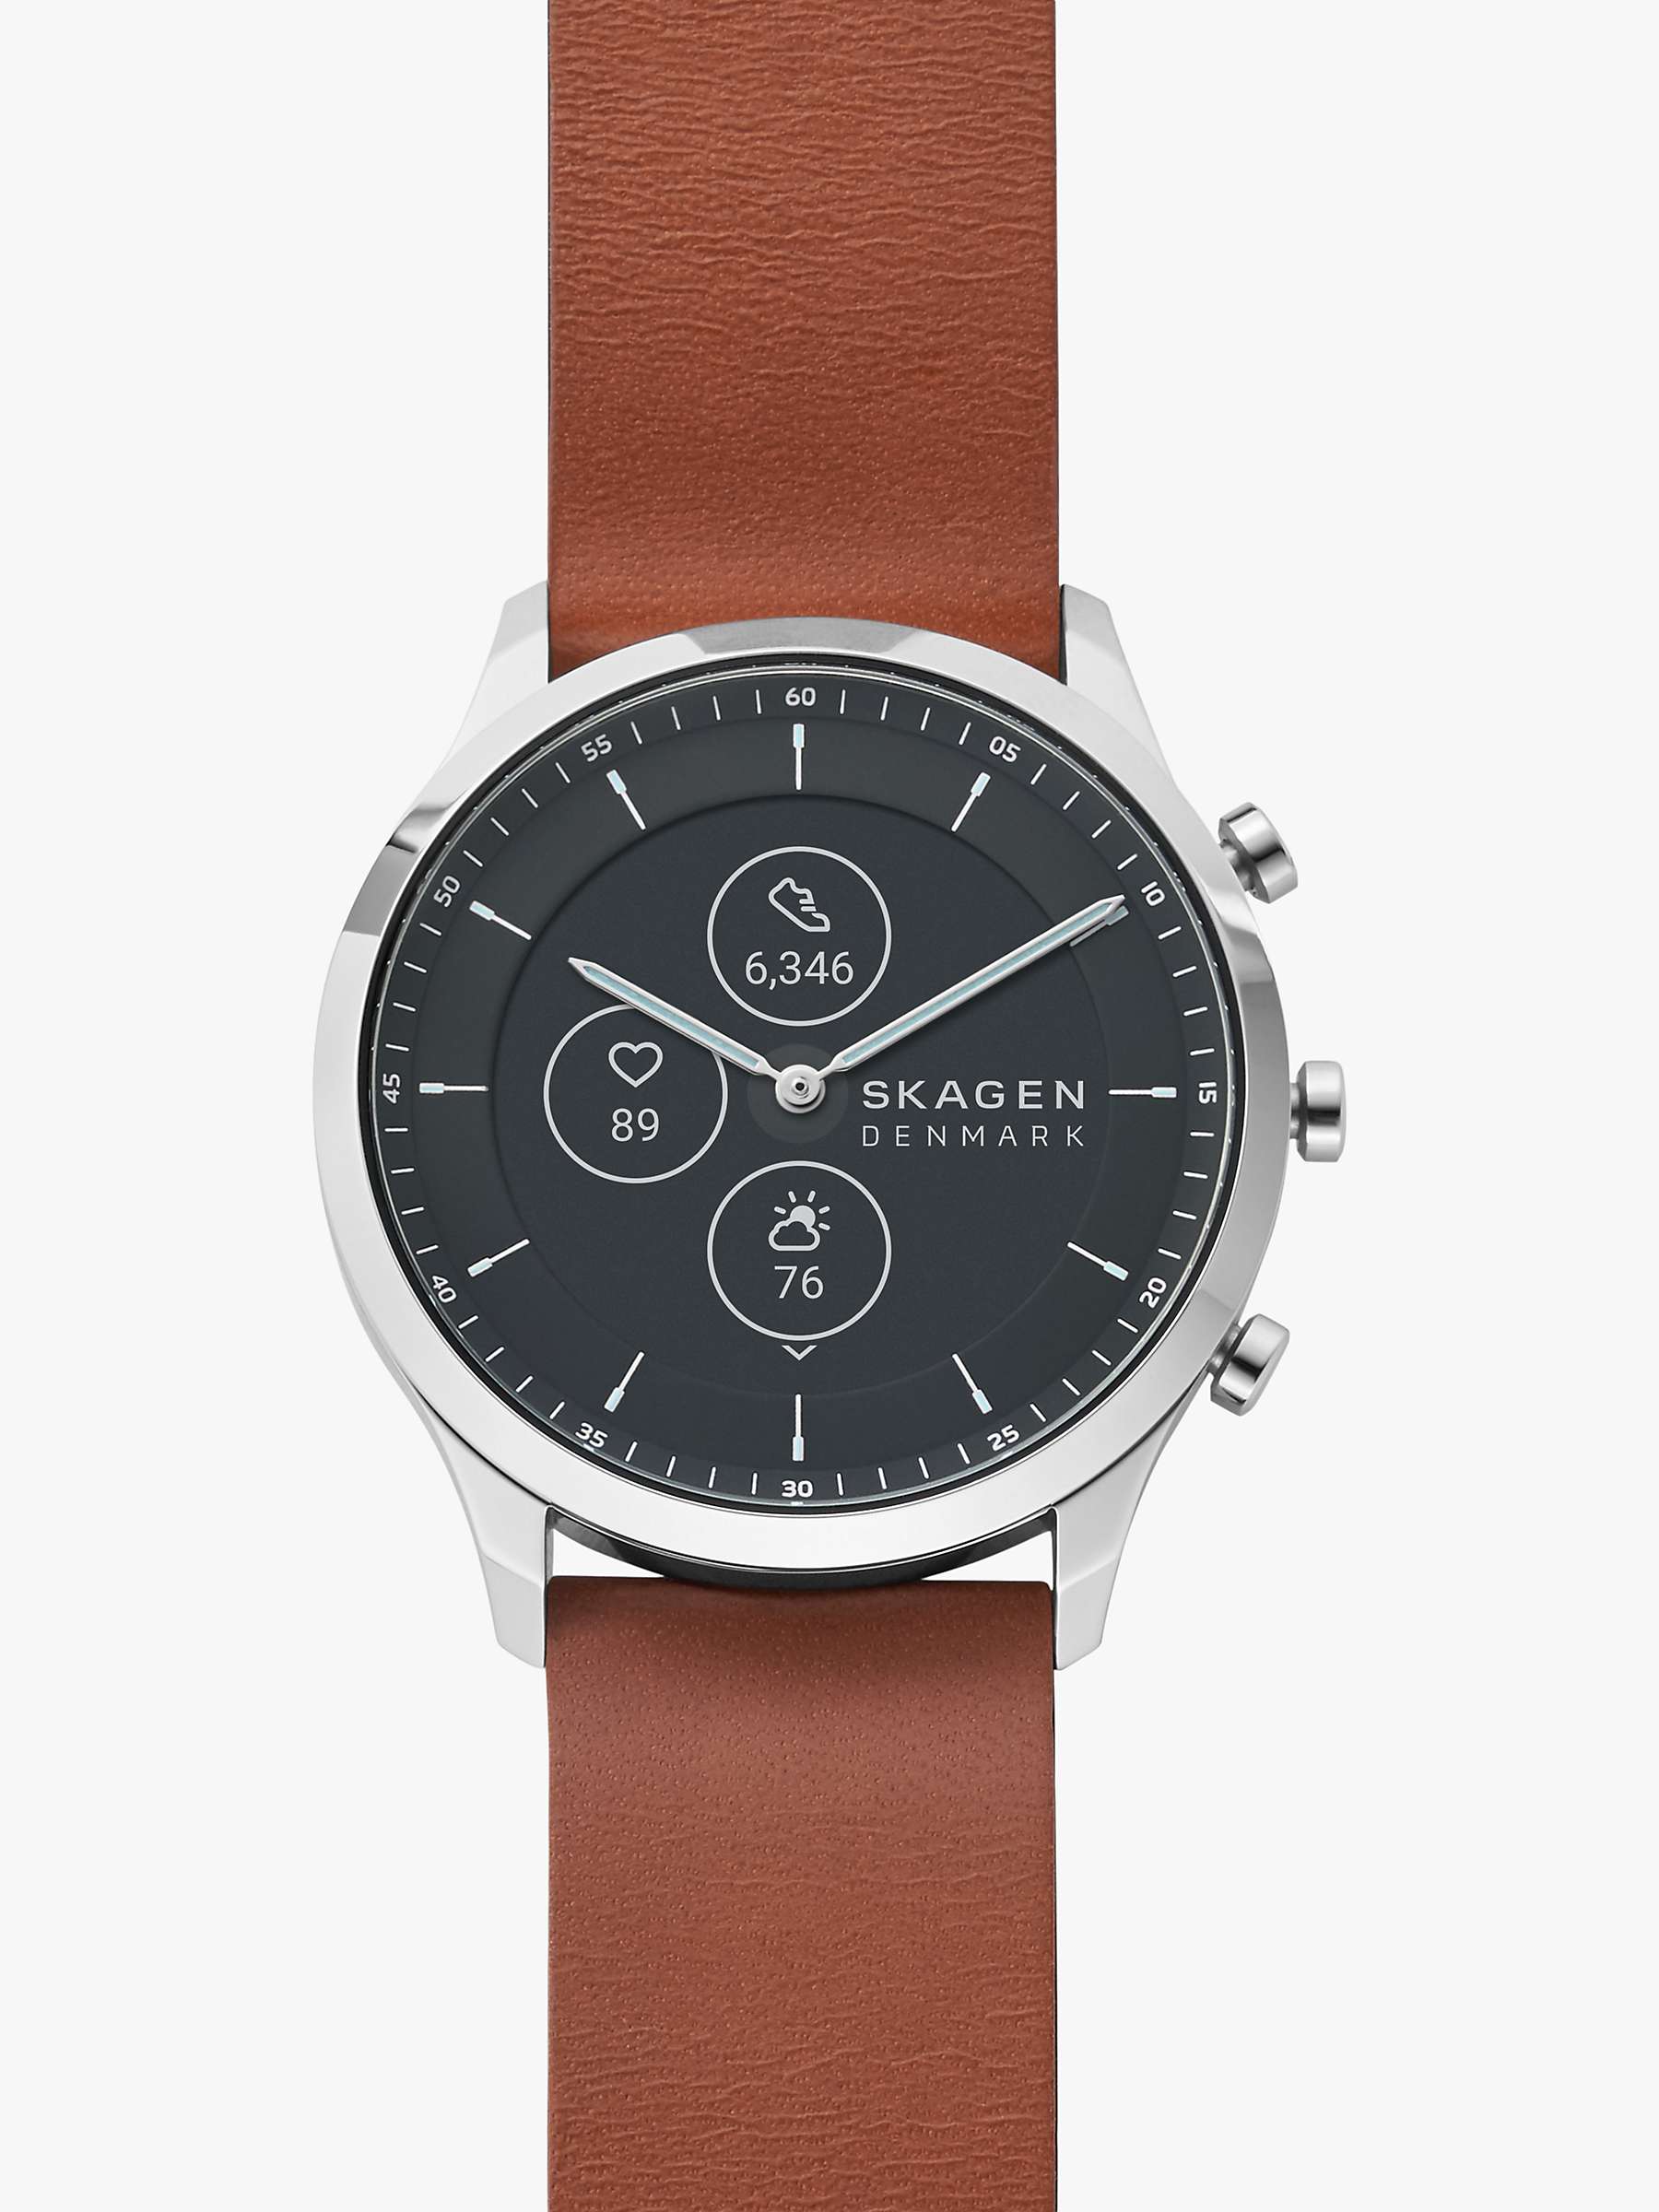 Buy Skagen SKT3000 Men's Leather Strap Smartwatch, Tan/Black Online at johnlewis.com